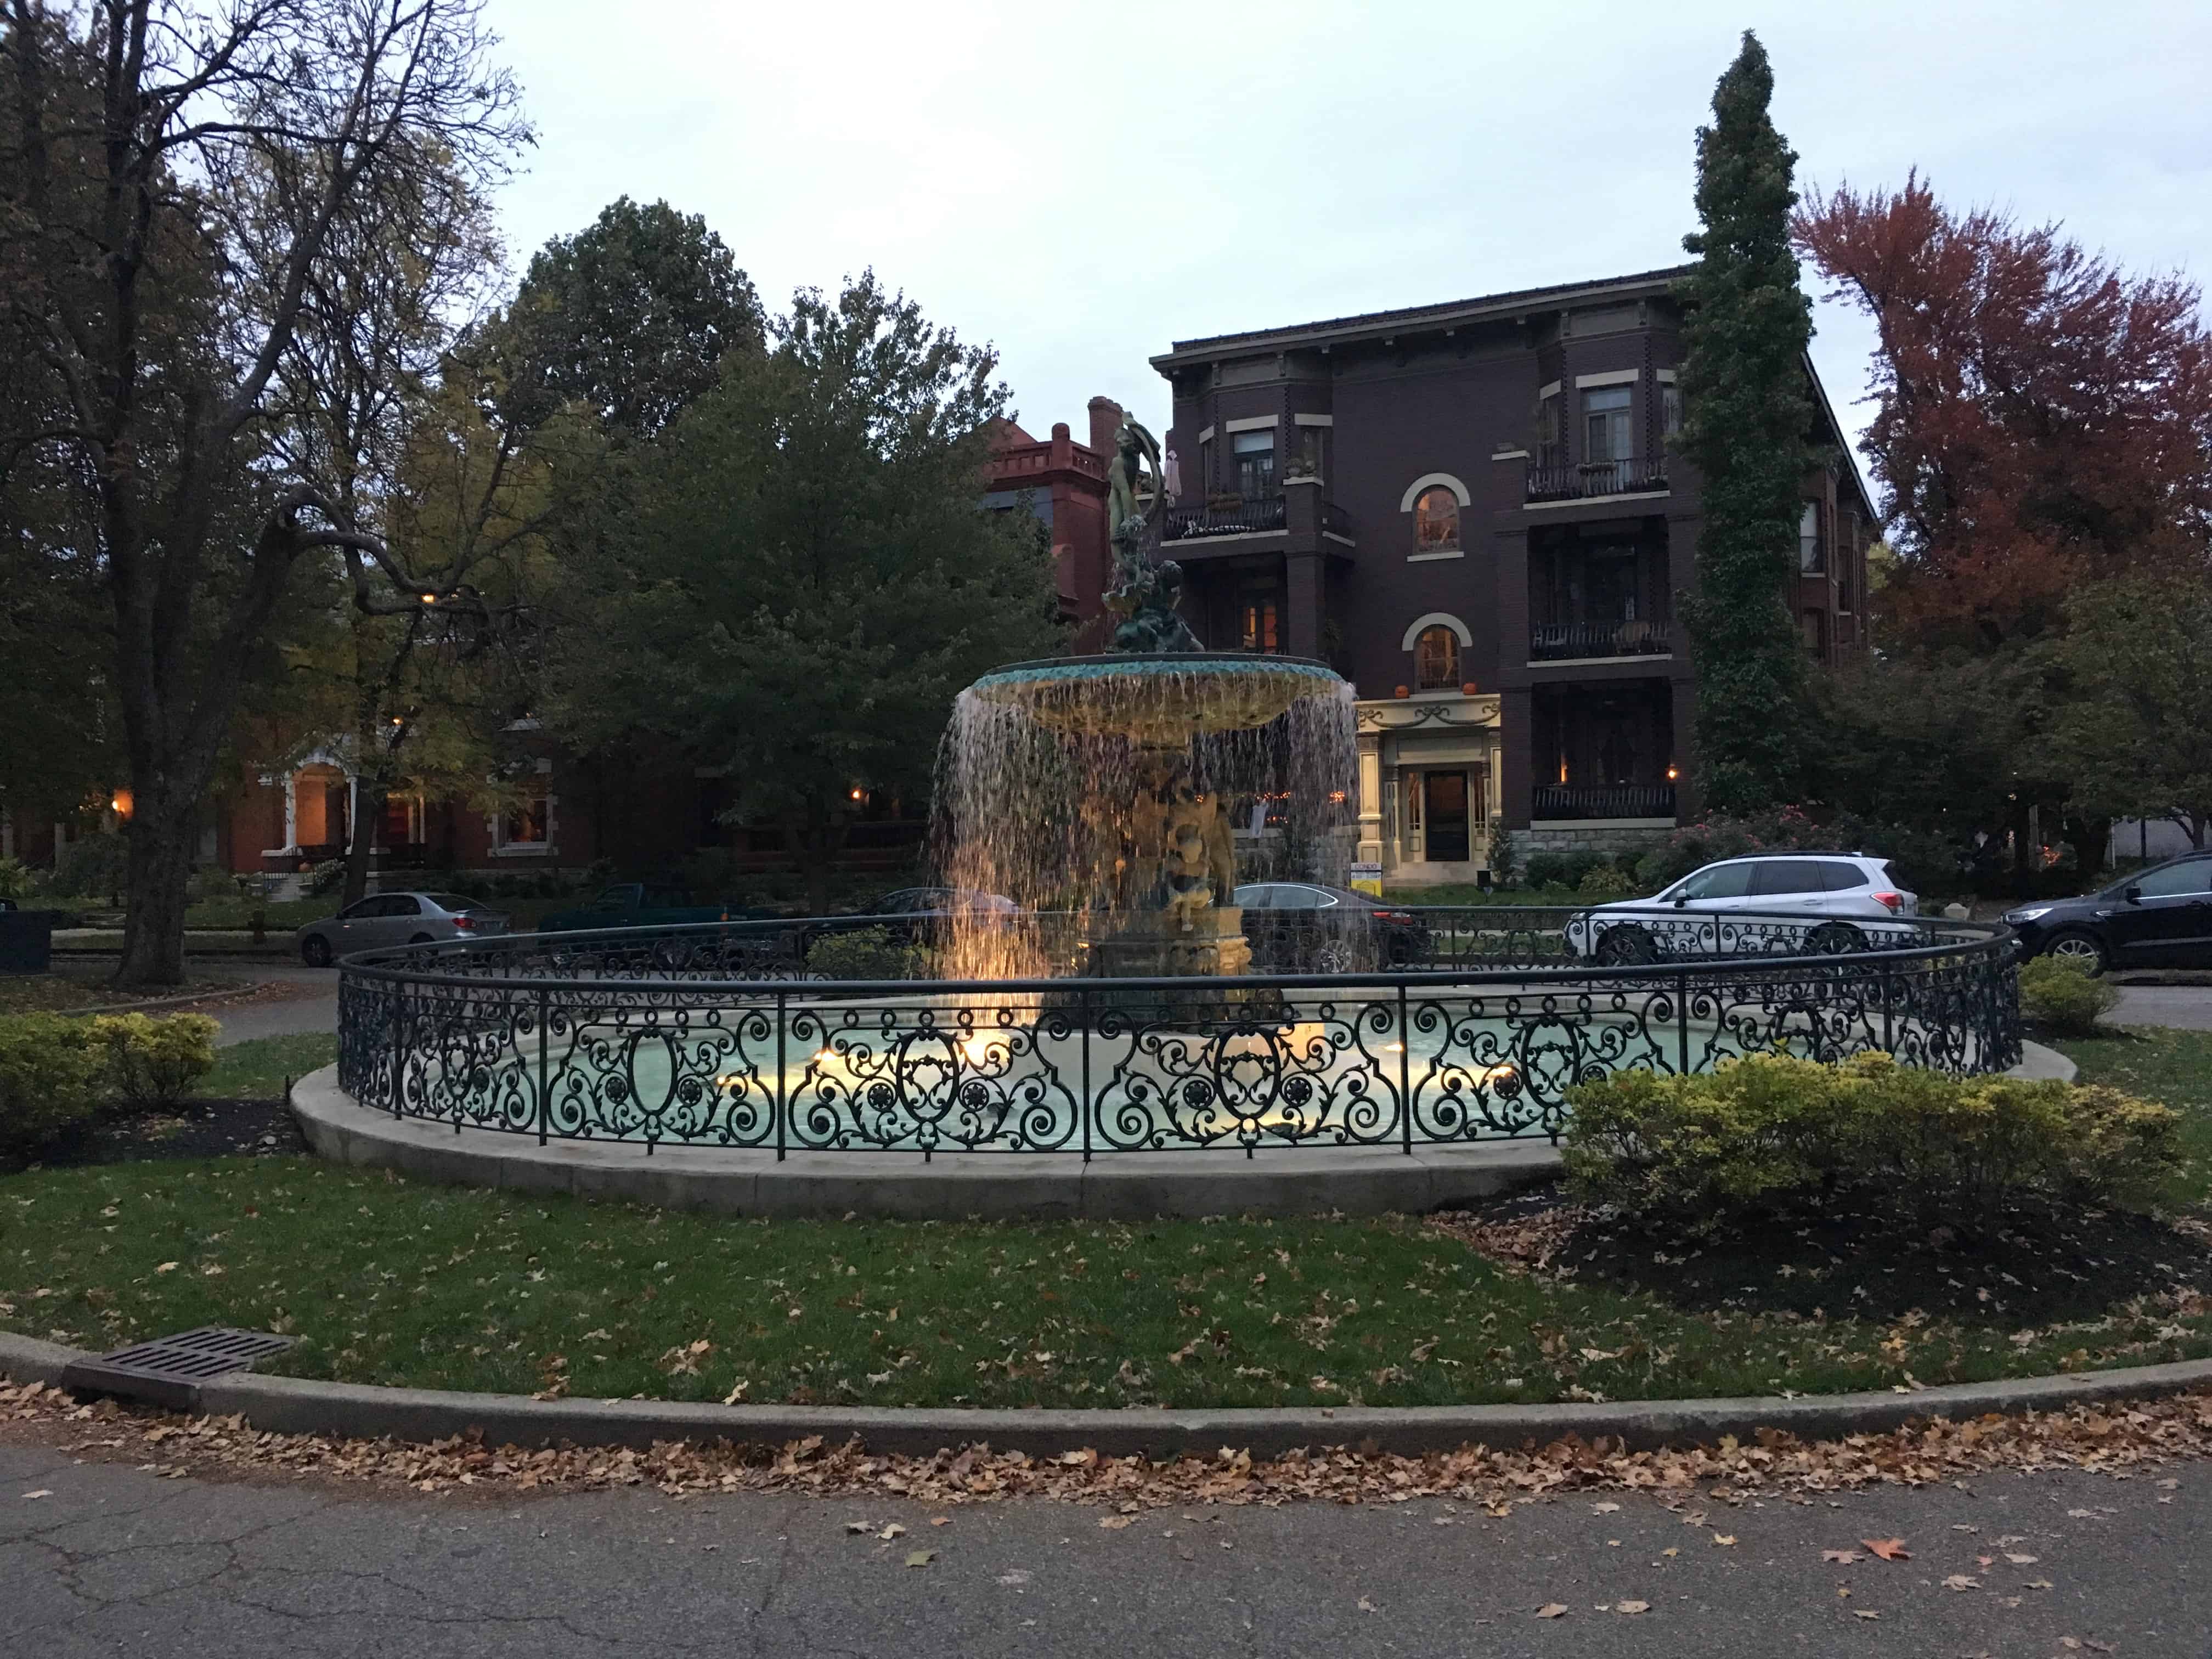 Fountain on St. James Court in Louisville, Kentucky